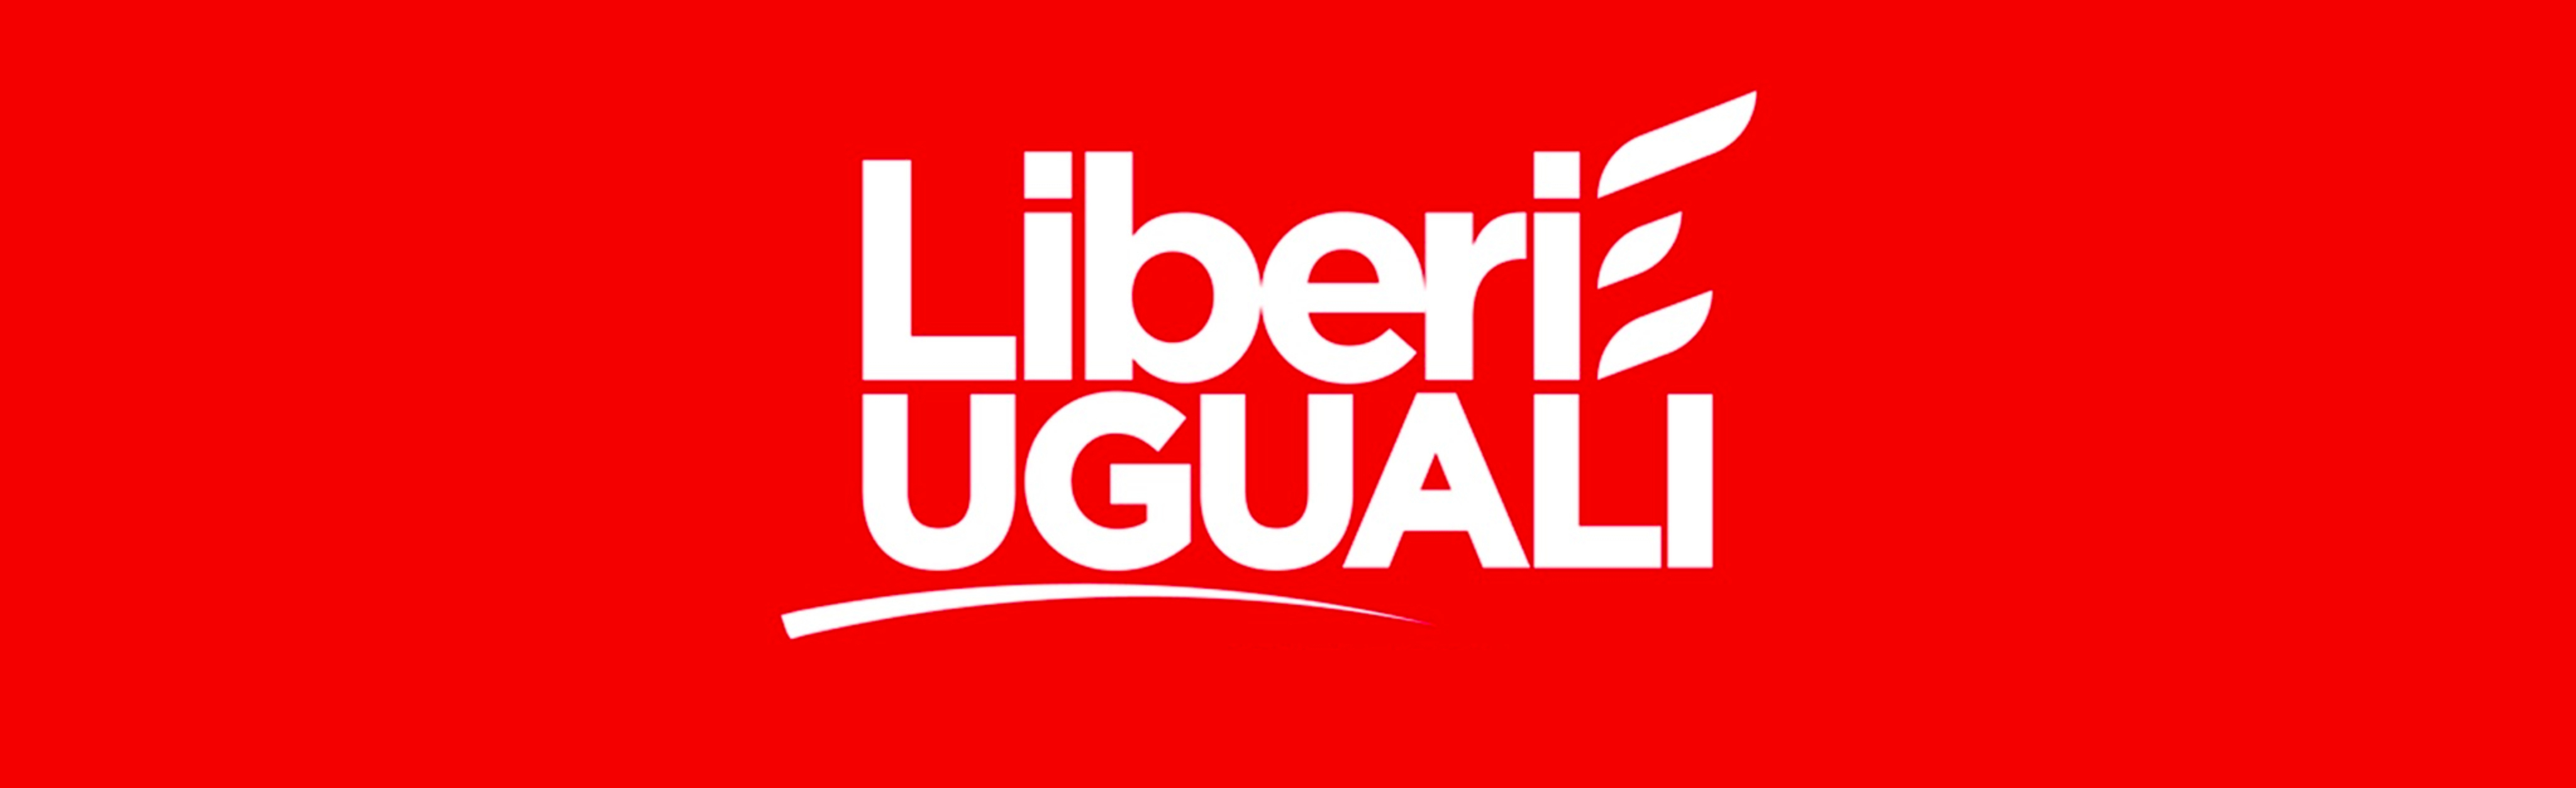 Benevento| Liberi e Uguali, nasce il comitato promotore